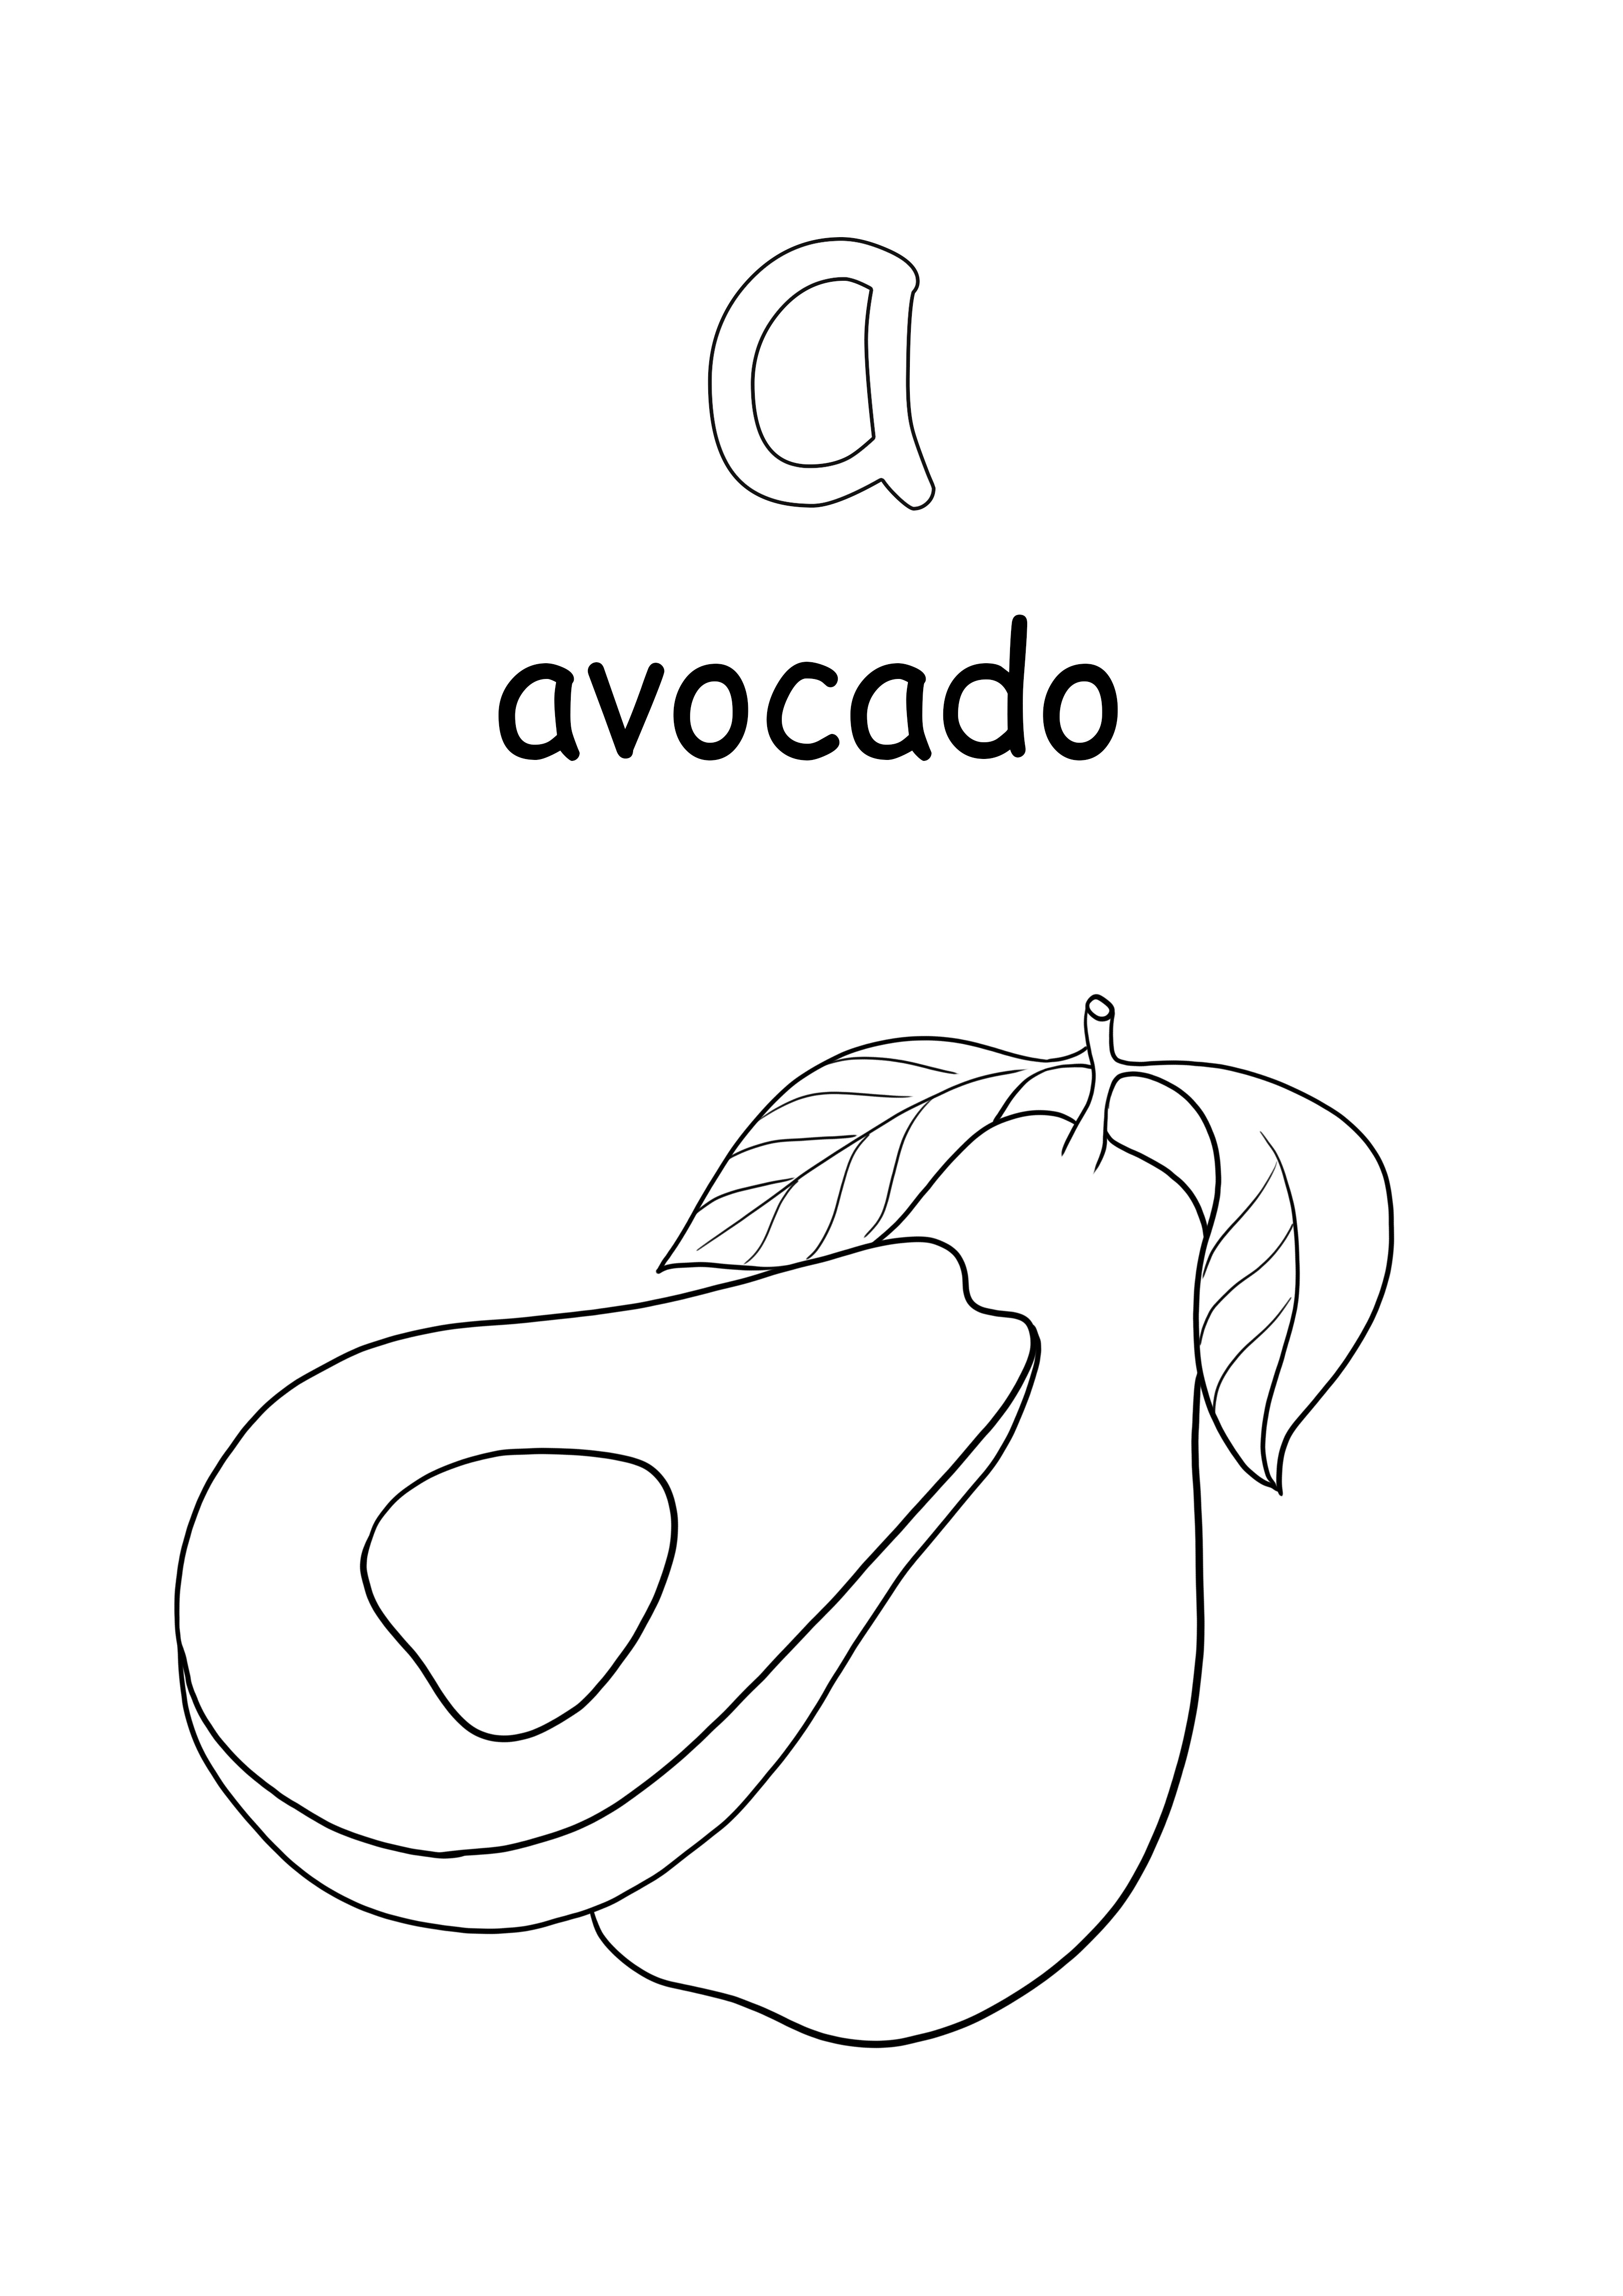 Minuscule o literă și un cuvânt avocado pentru a colora și a nu se imprima